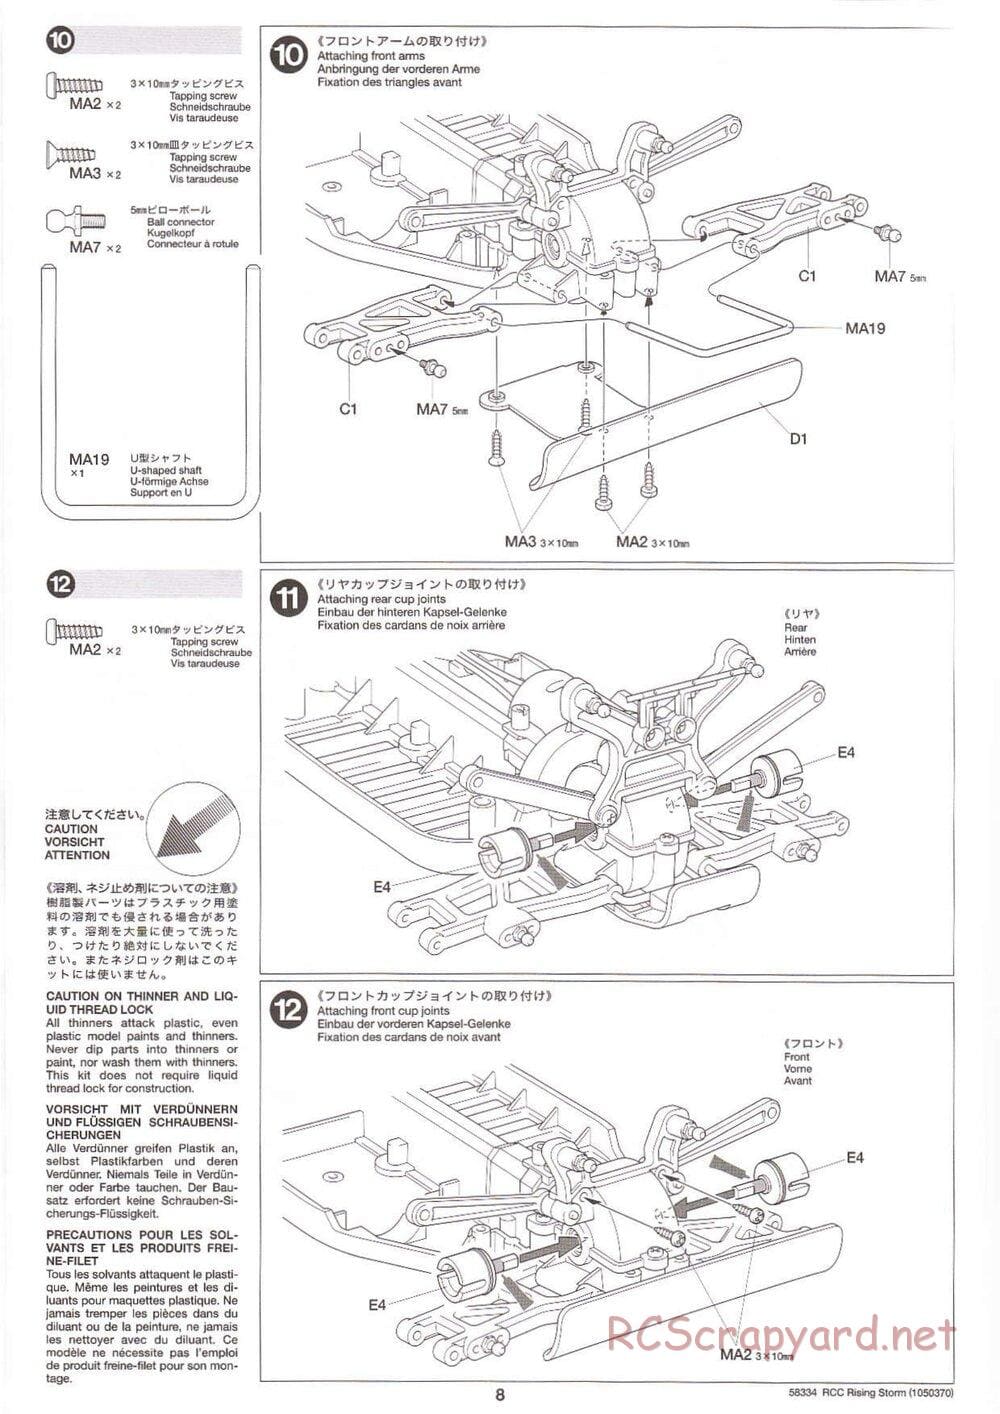 Tamiya - Rising Storm Chassis - Manual - Page 8